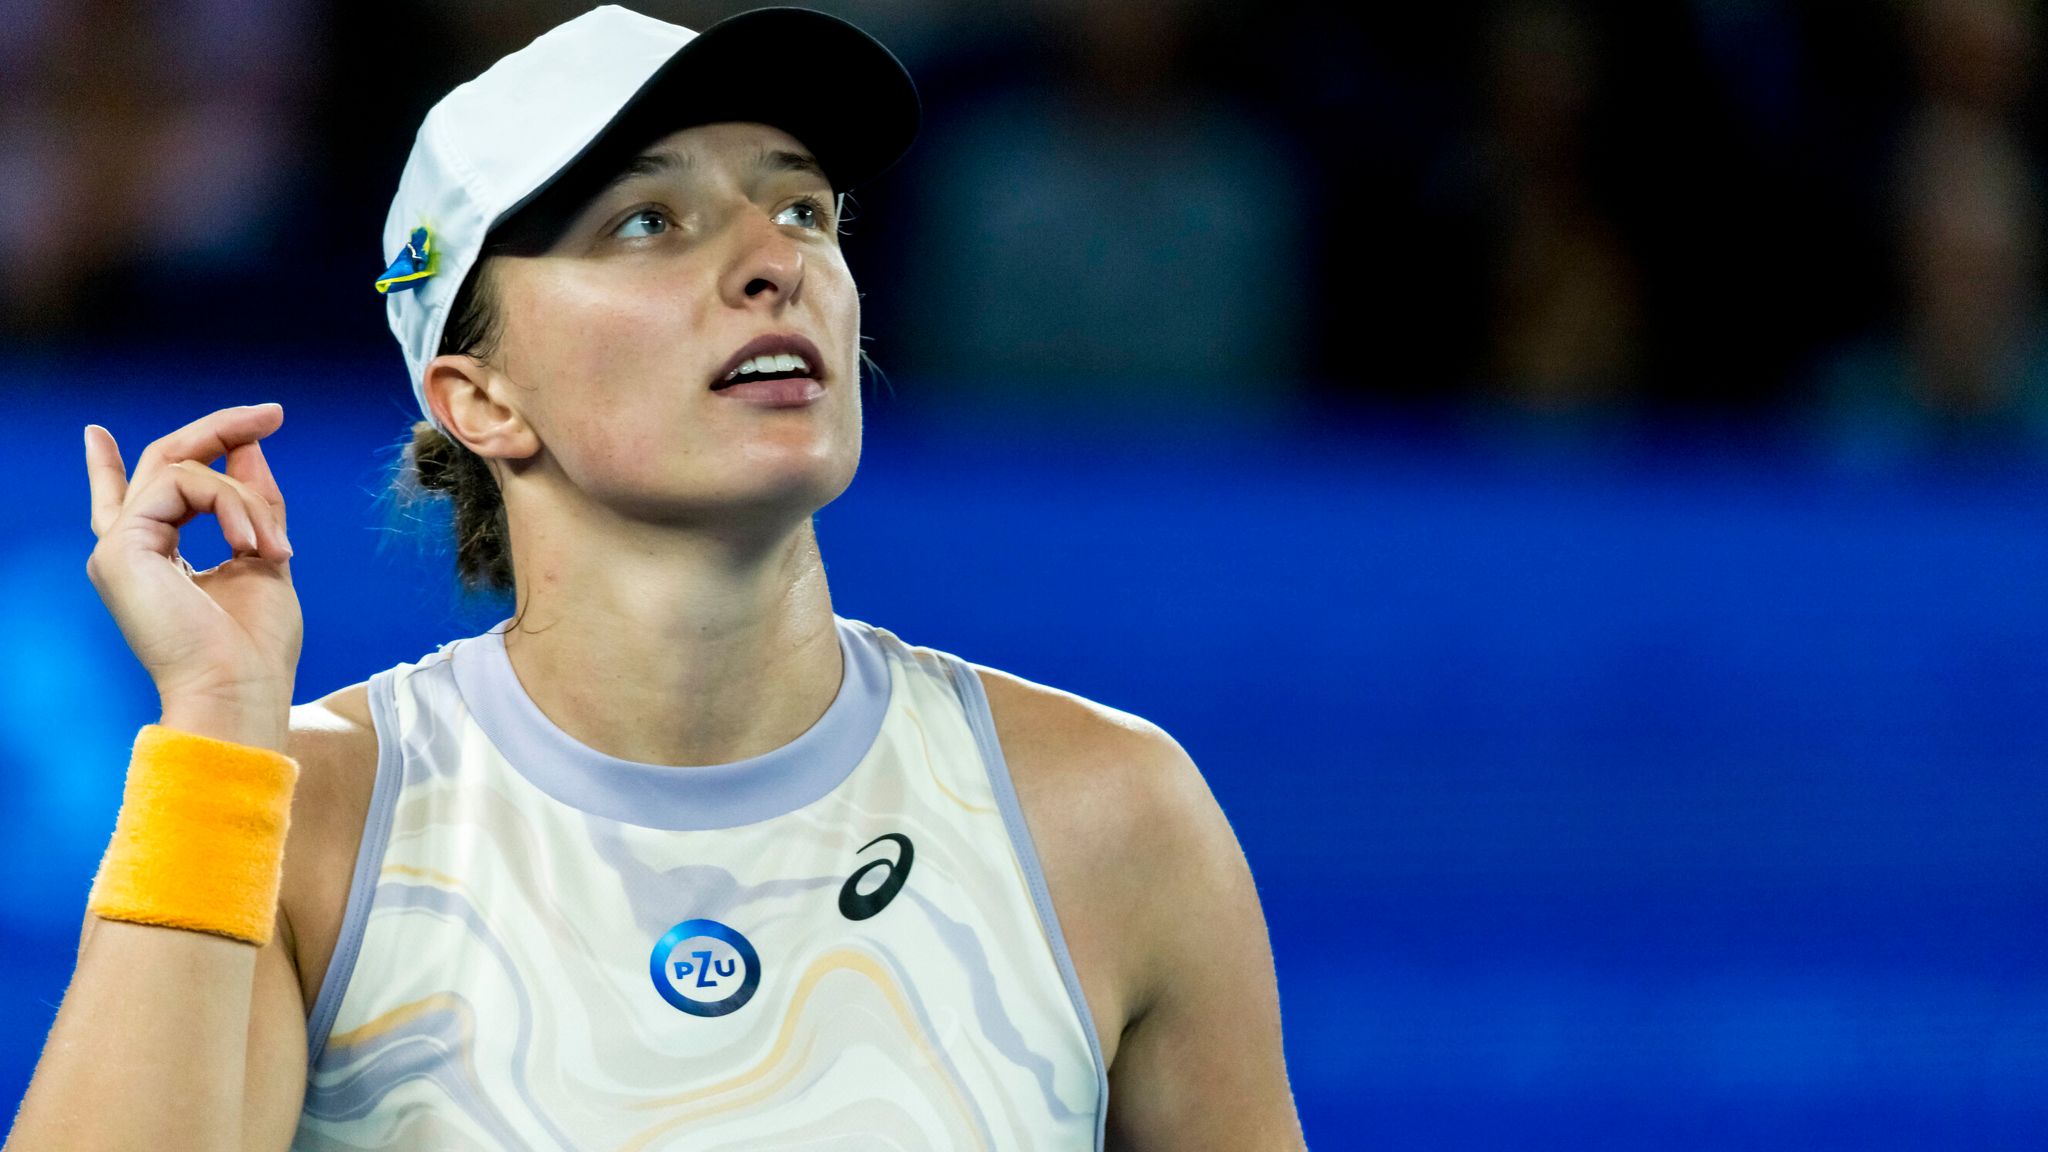 Tennis, WTA – Dubai Duty Free Championships 2023: Keys sees off